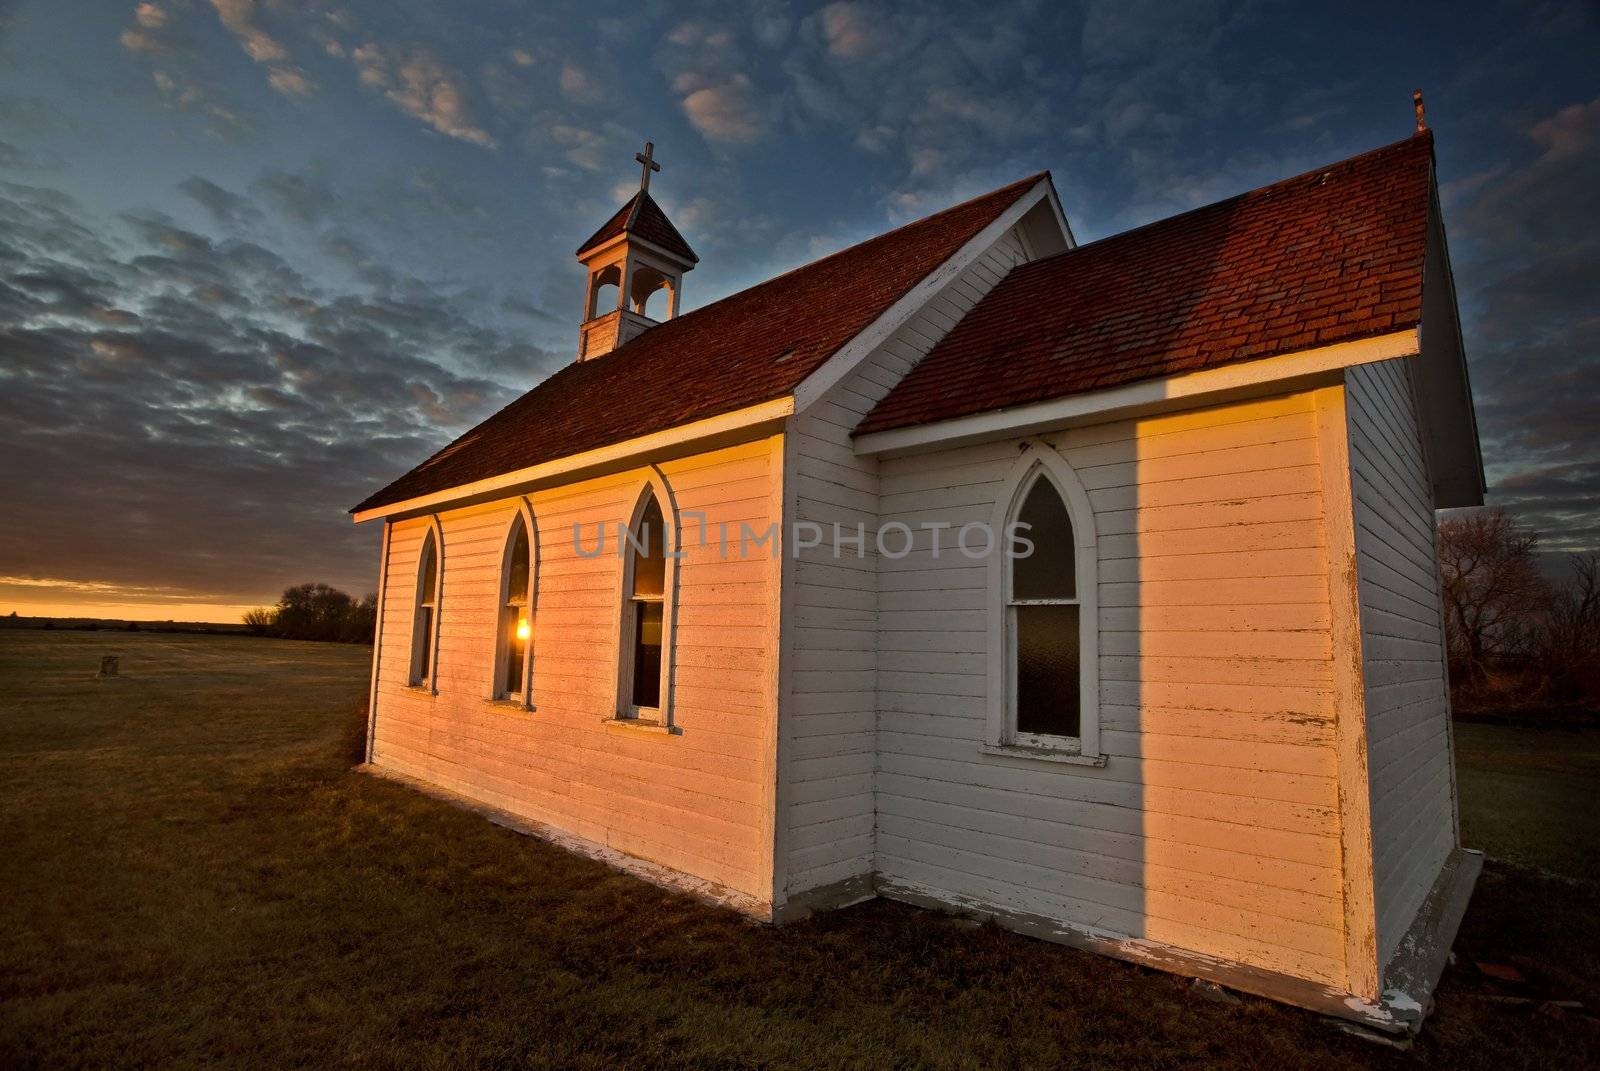 Sunset Saskatchewan Church by pictureguy